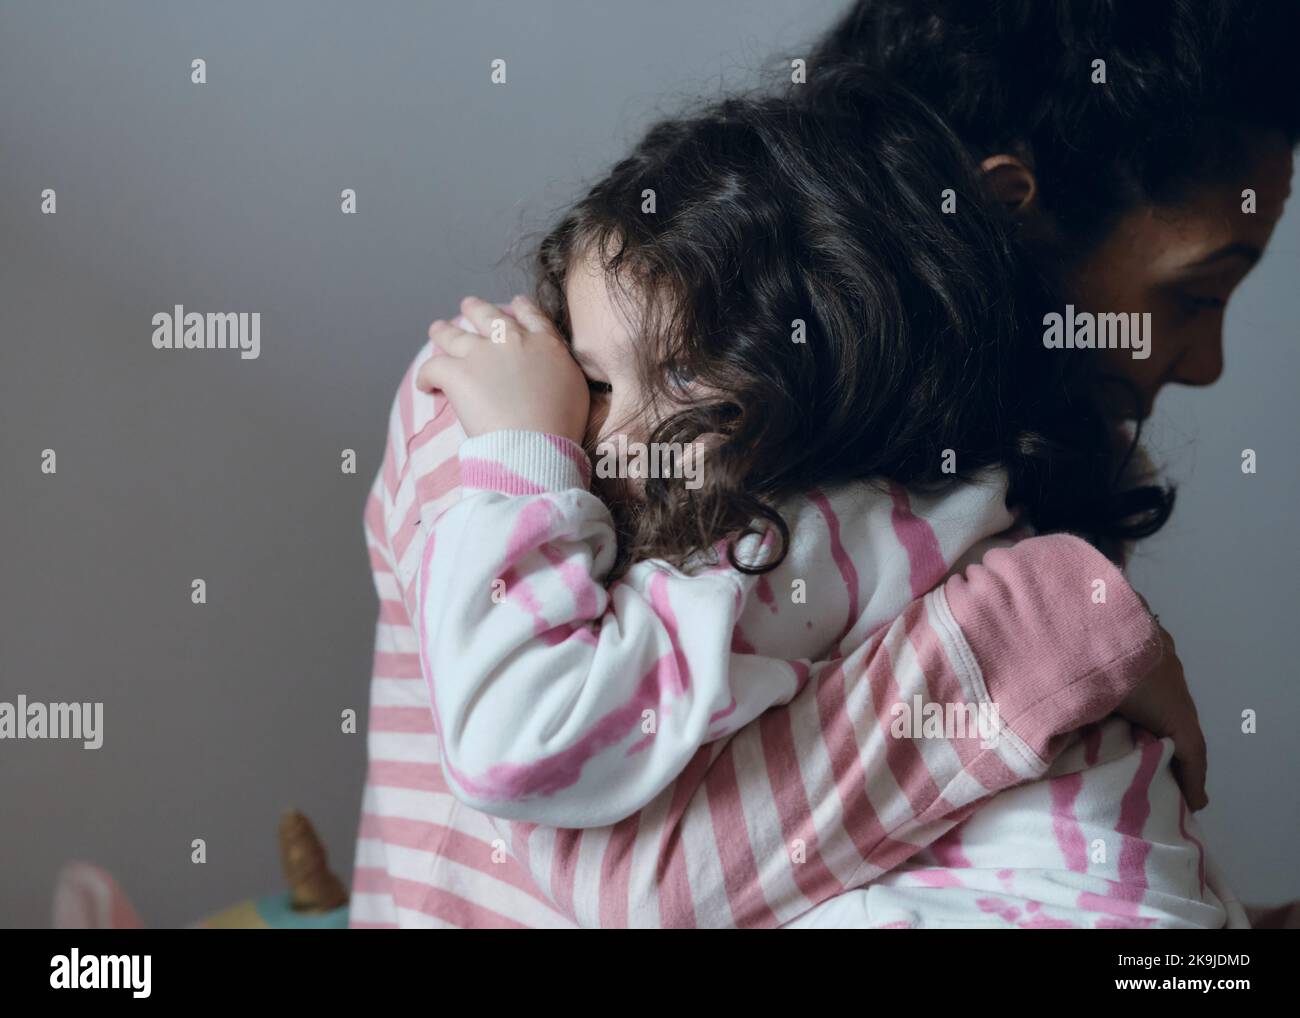 Une petite fille contrariée étant consolée par sa mère Banque D'Images